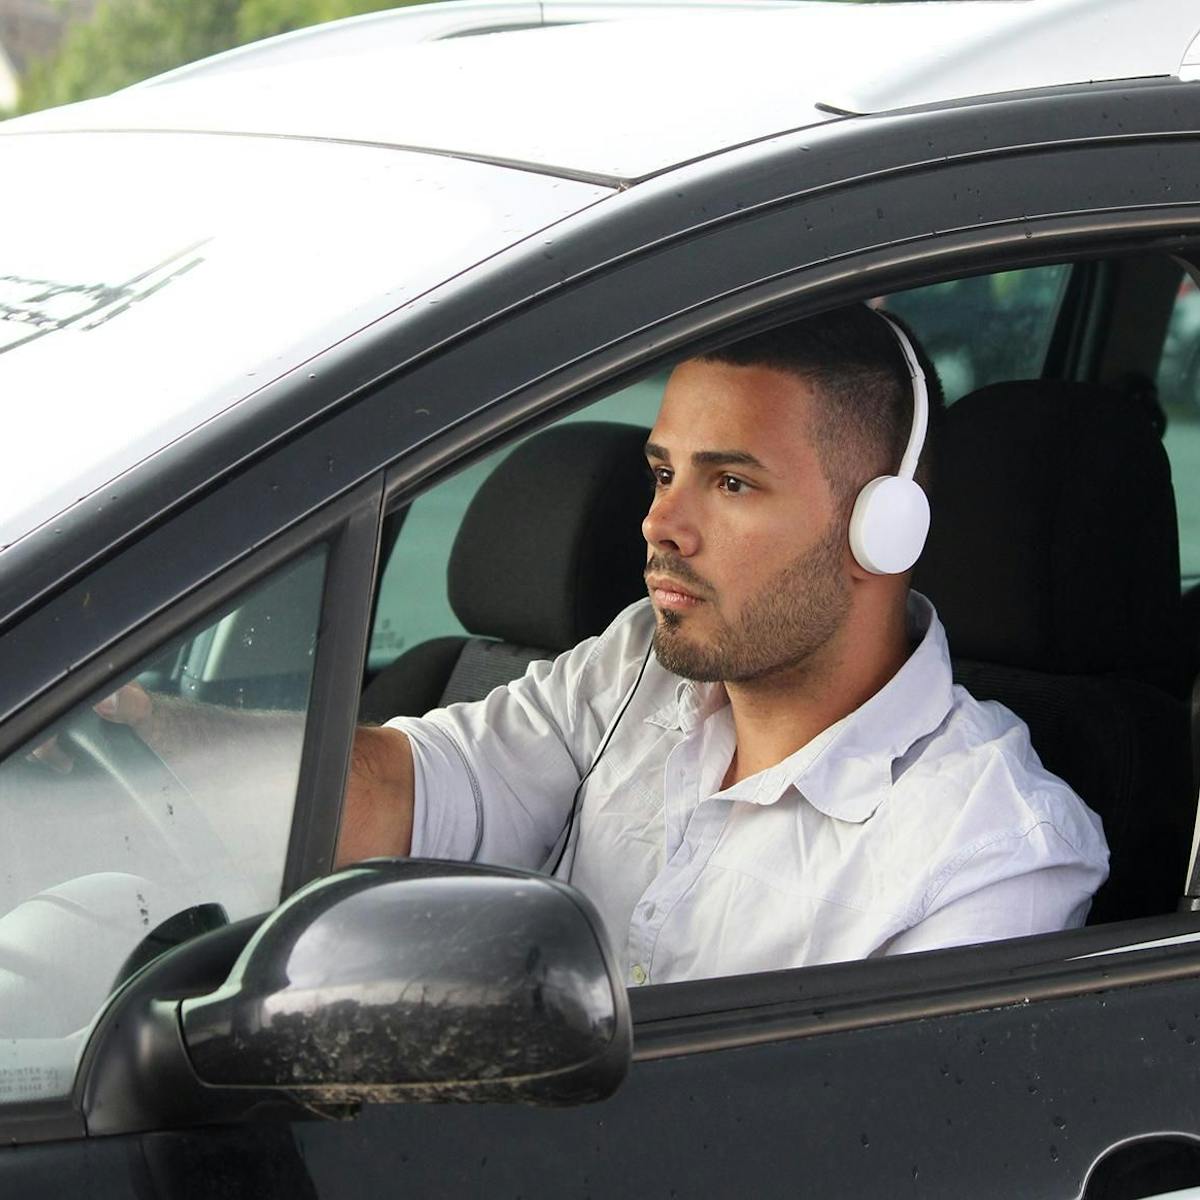 ECOUTER DE LA MUSIQUE OU TELEPHONER – Ecouteurs en voiture: est-ce  autorisé? - 20 minutes